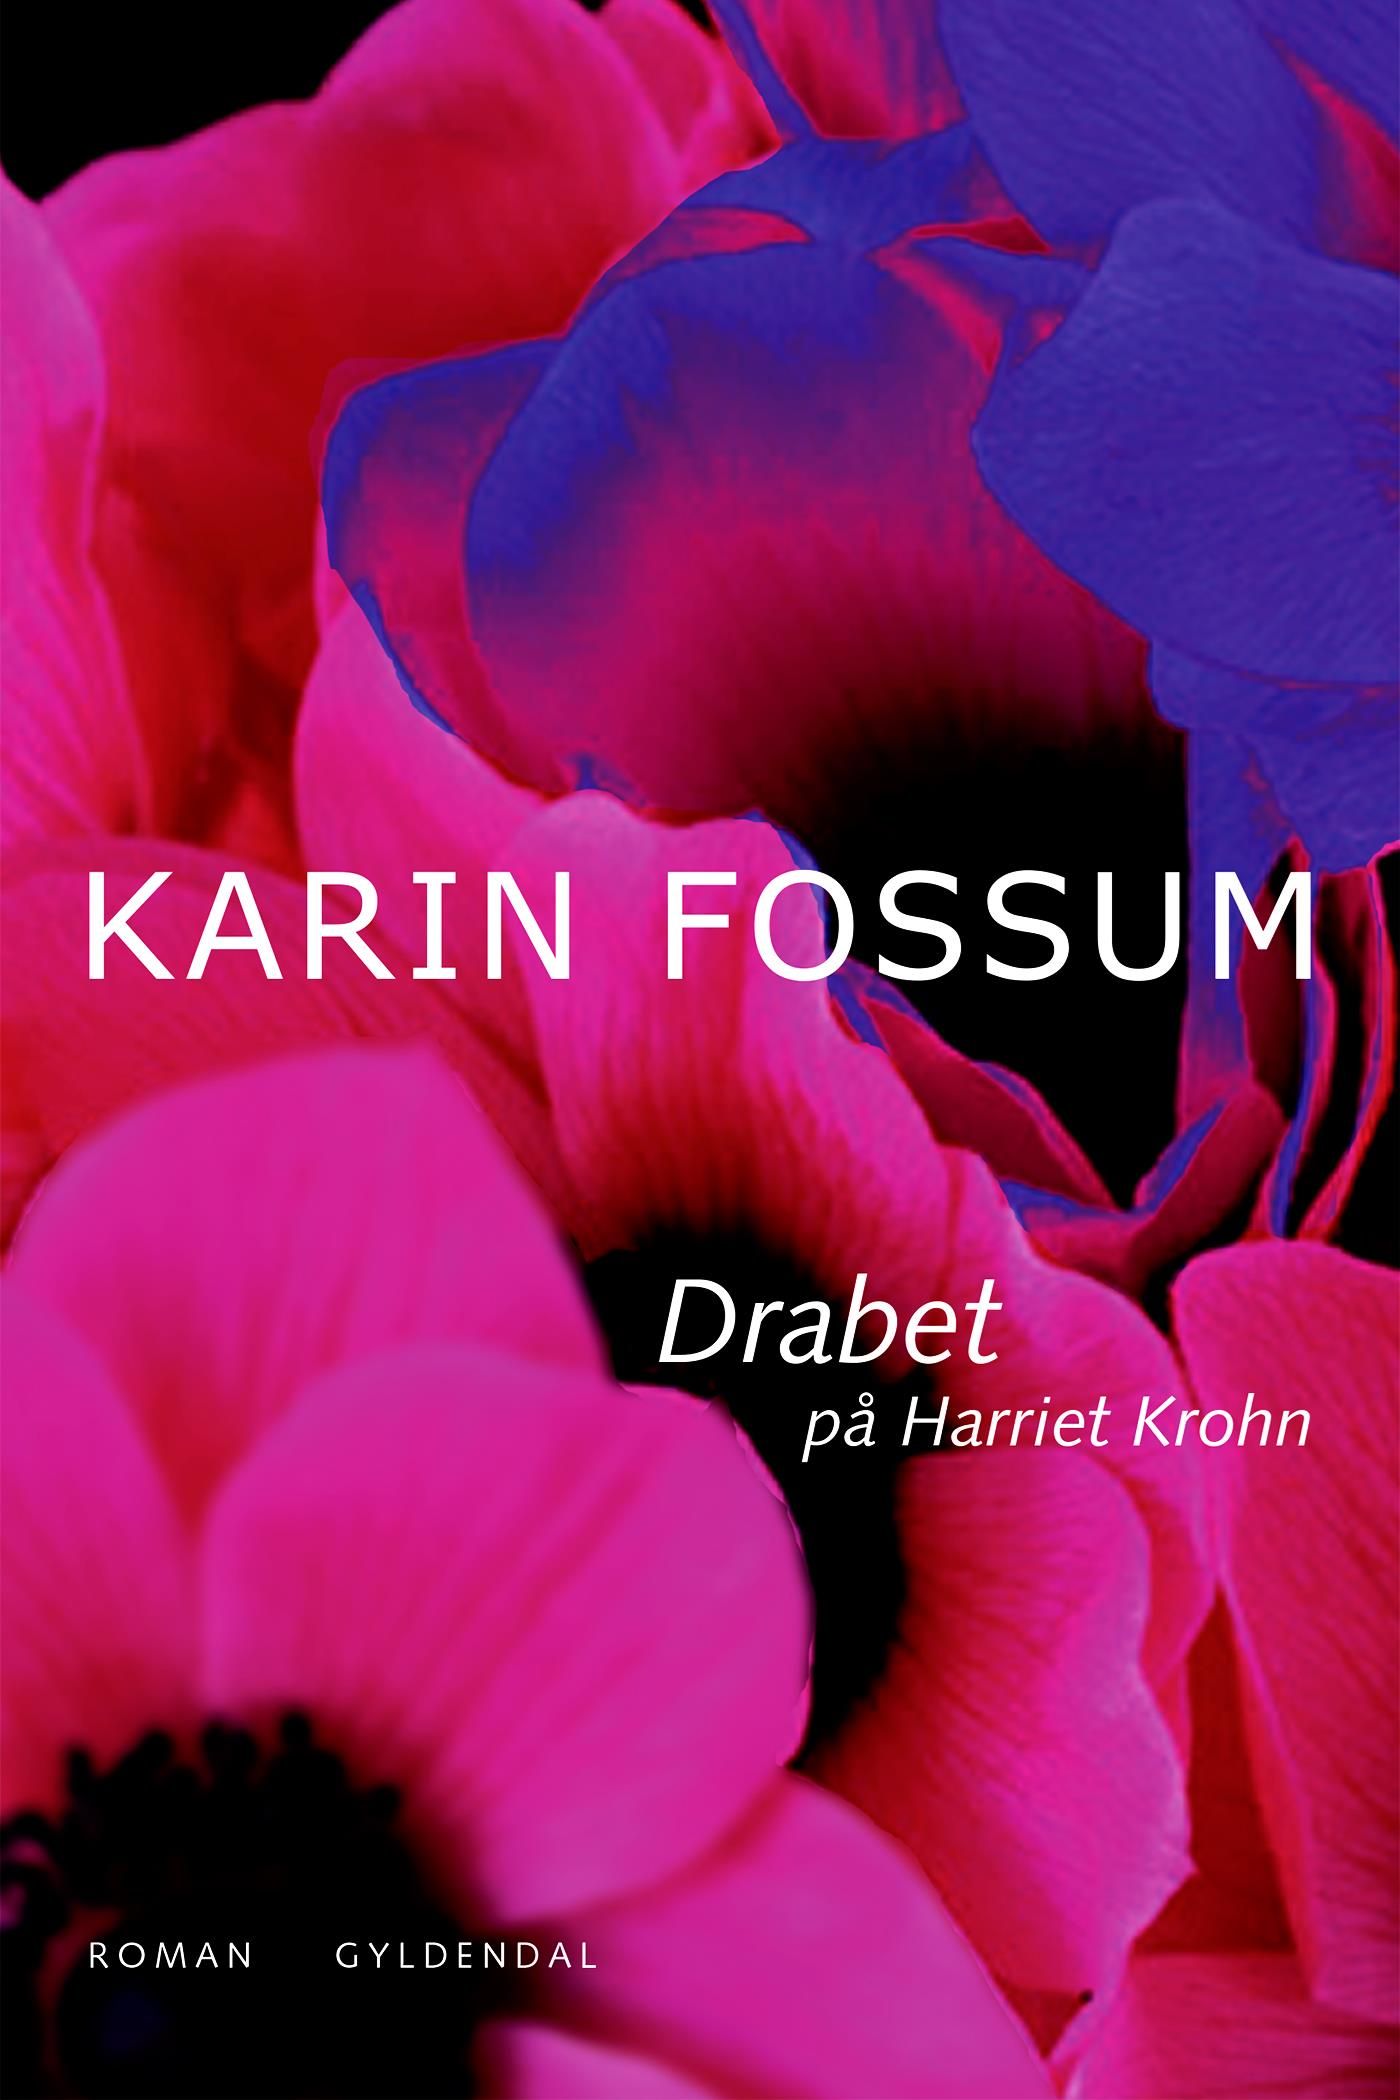 Drabet på Harriet Krohn, e-bog af Karin Fossum